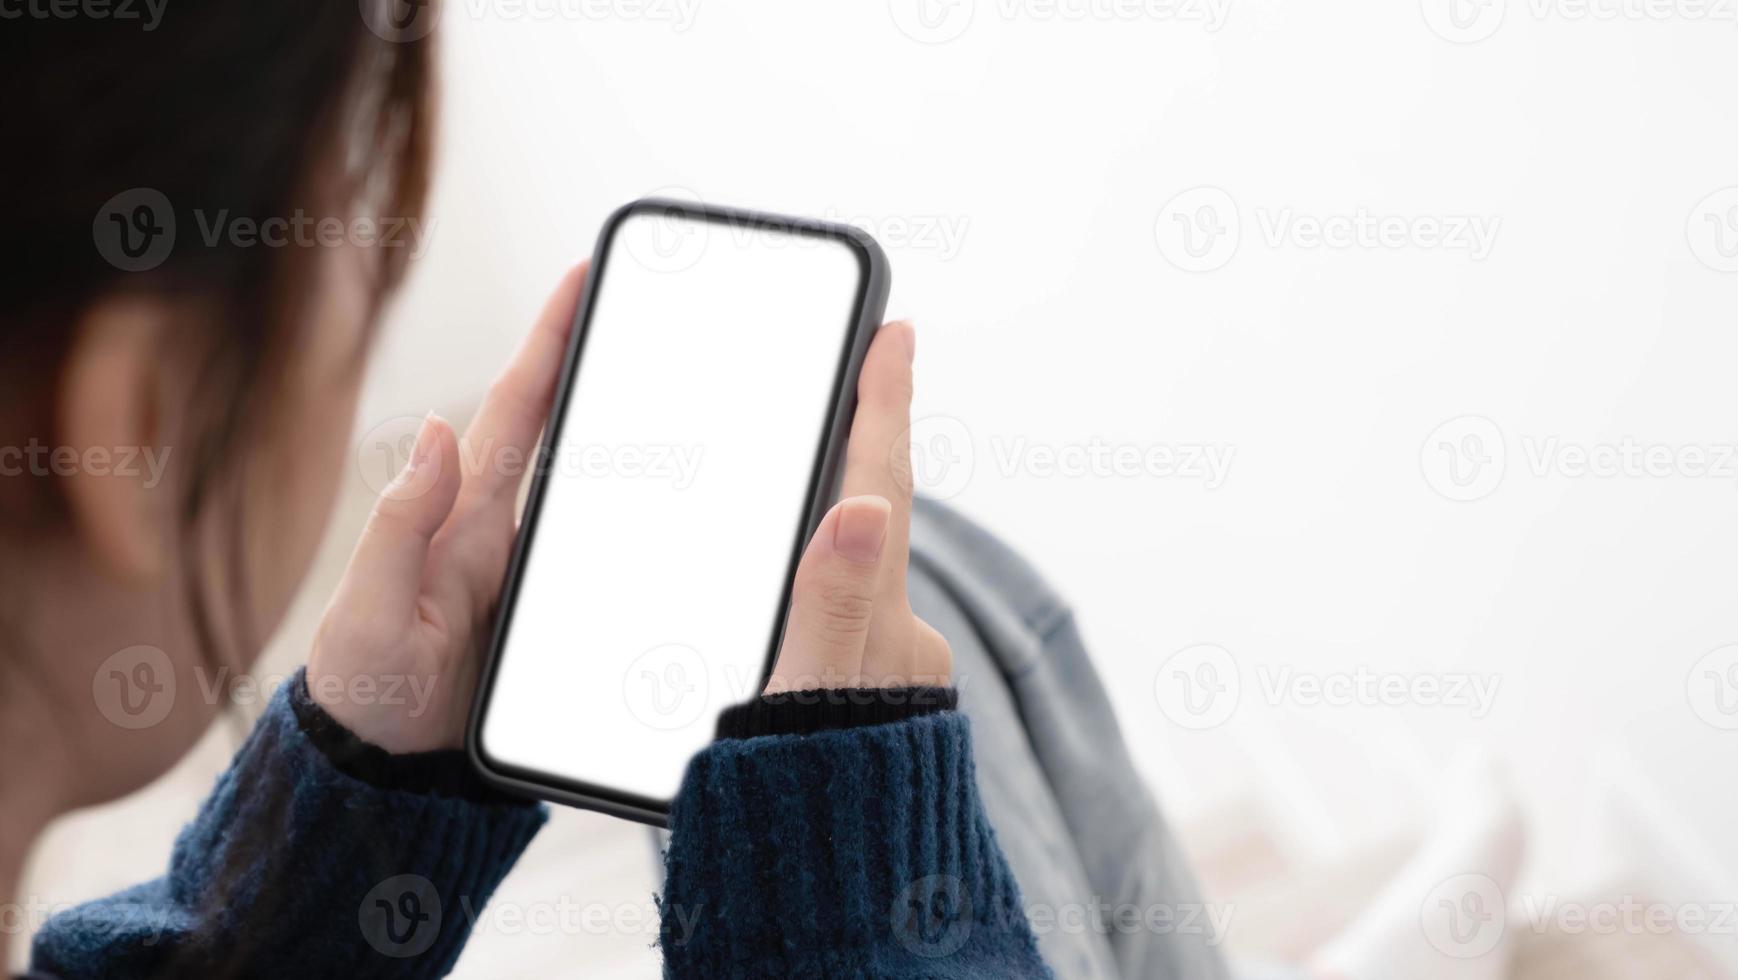 vista superior de manos de mujer sosteniendo un teléfono inteligente con pantalla de espacio de copia en blanco para su mensaje de texto o contenido de información. foto